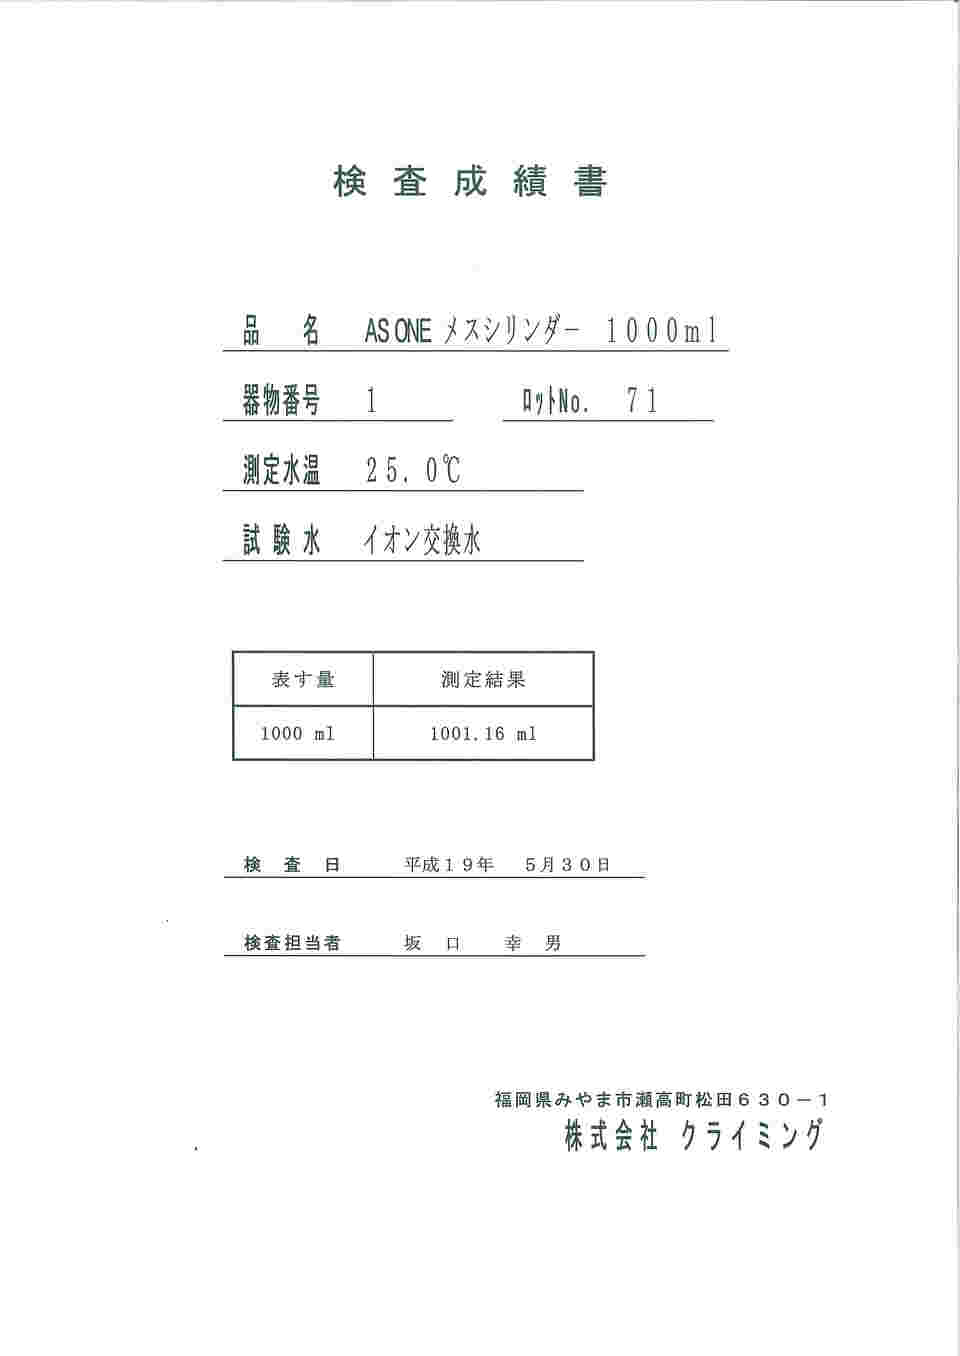 61-9598-18 メスフラスコ(白) ハイグレード 1000 検査成績書付 CL2032